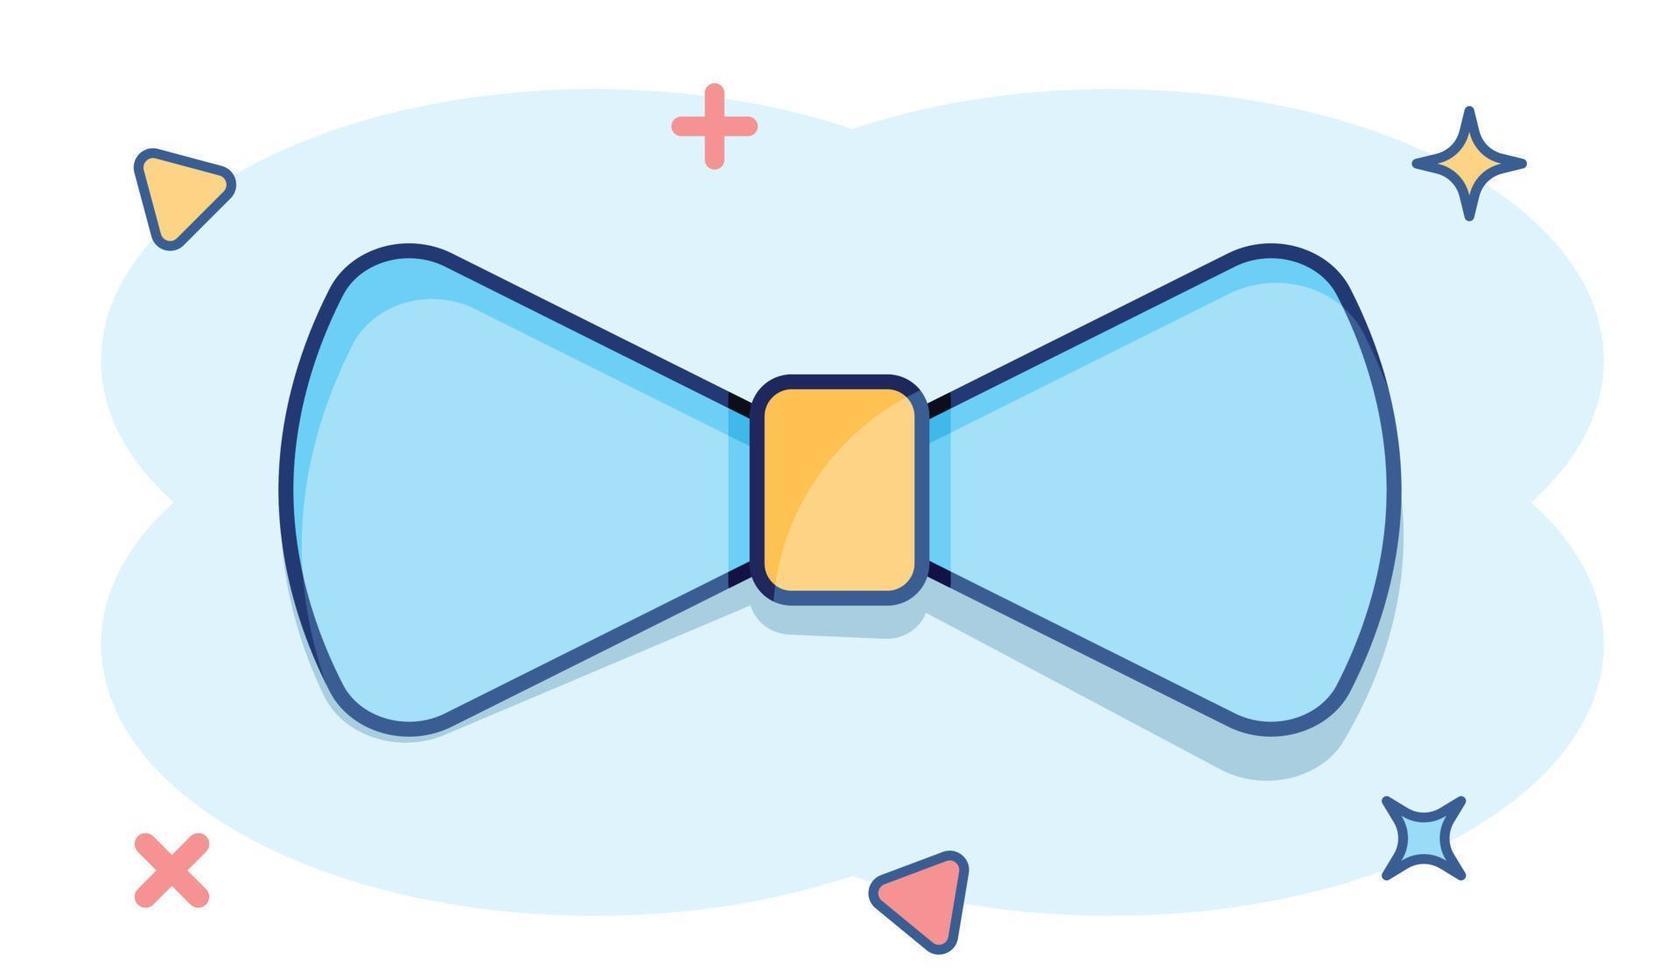 icône de noeud papillon de dessin animé de vecteur dans le style comique. pictogramme d'illustration de signe de cravate. concept d'effet d'éclaboussure d'affaires de noeud papillon.